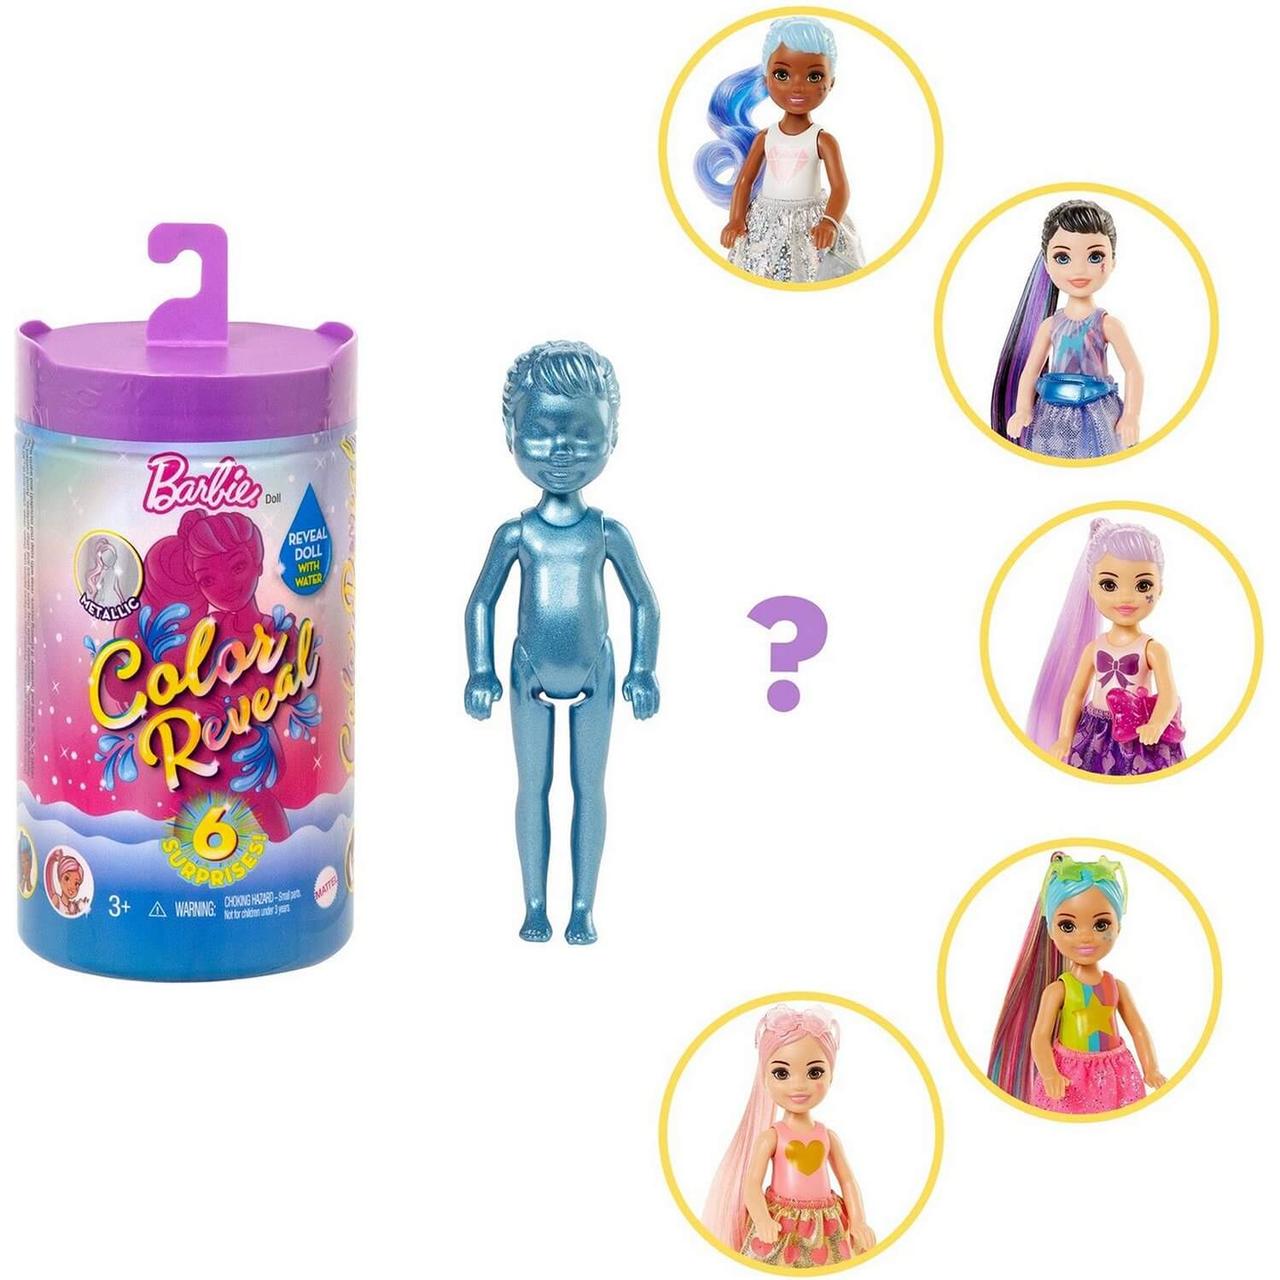 Набор Barbie Челси В1 кукла+аксессуары в непрозрачной упаковке (Сюрприз)